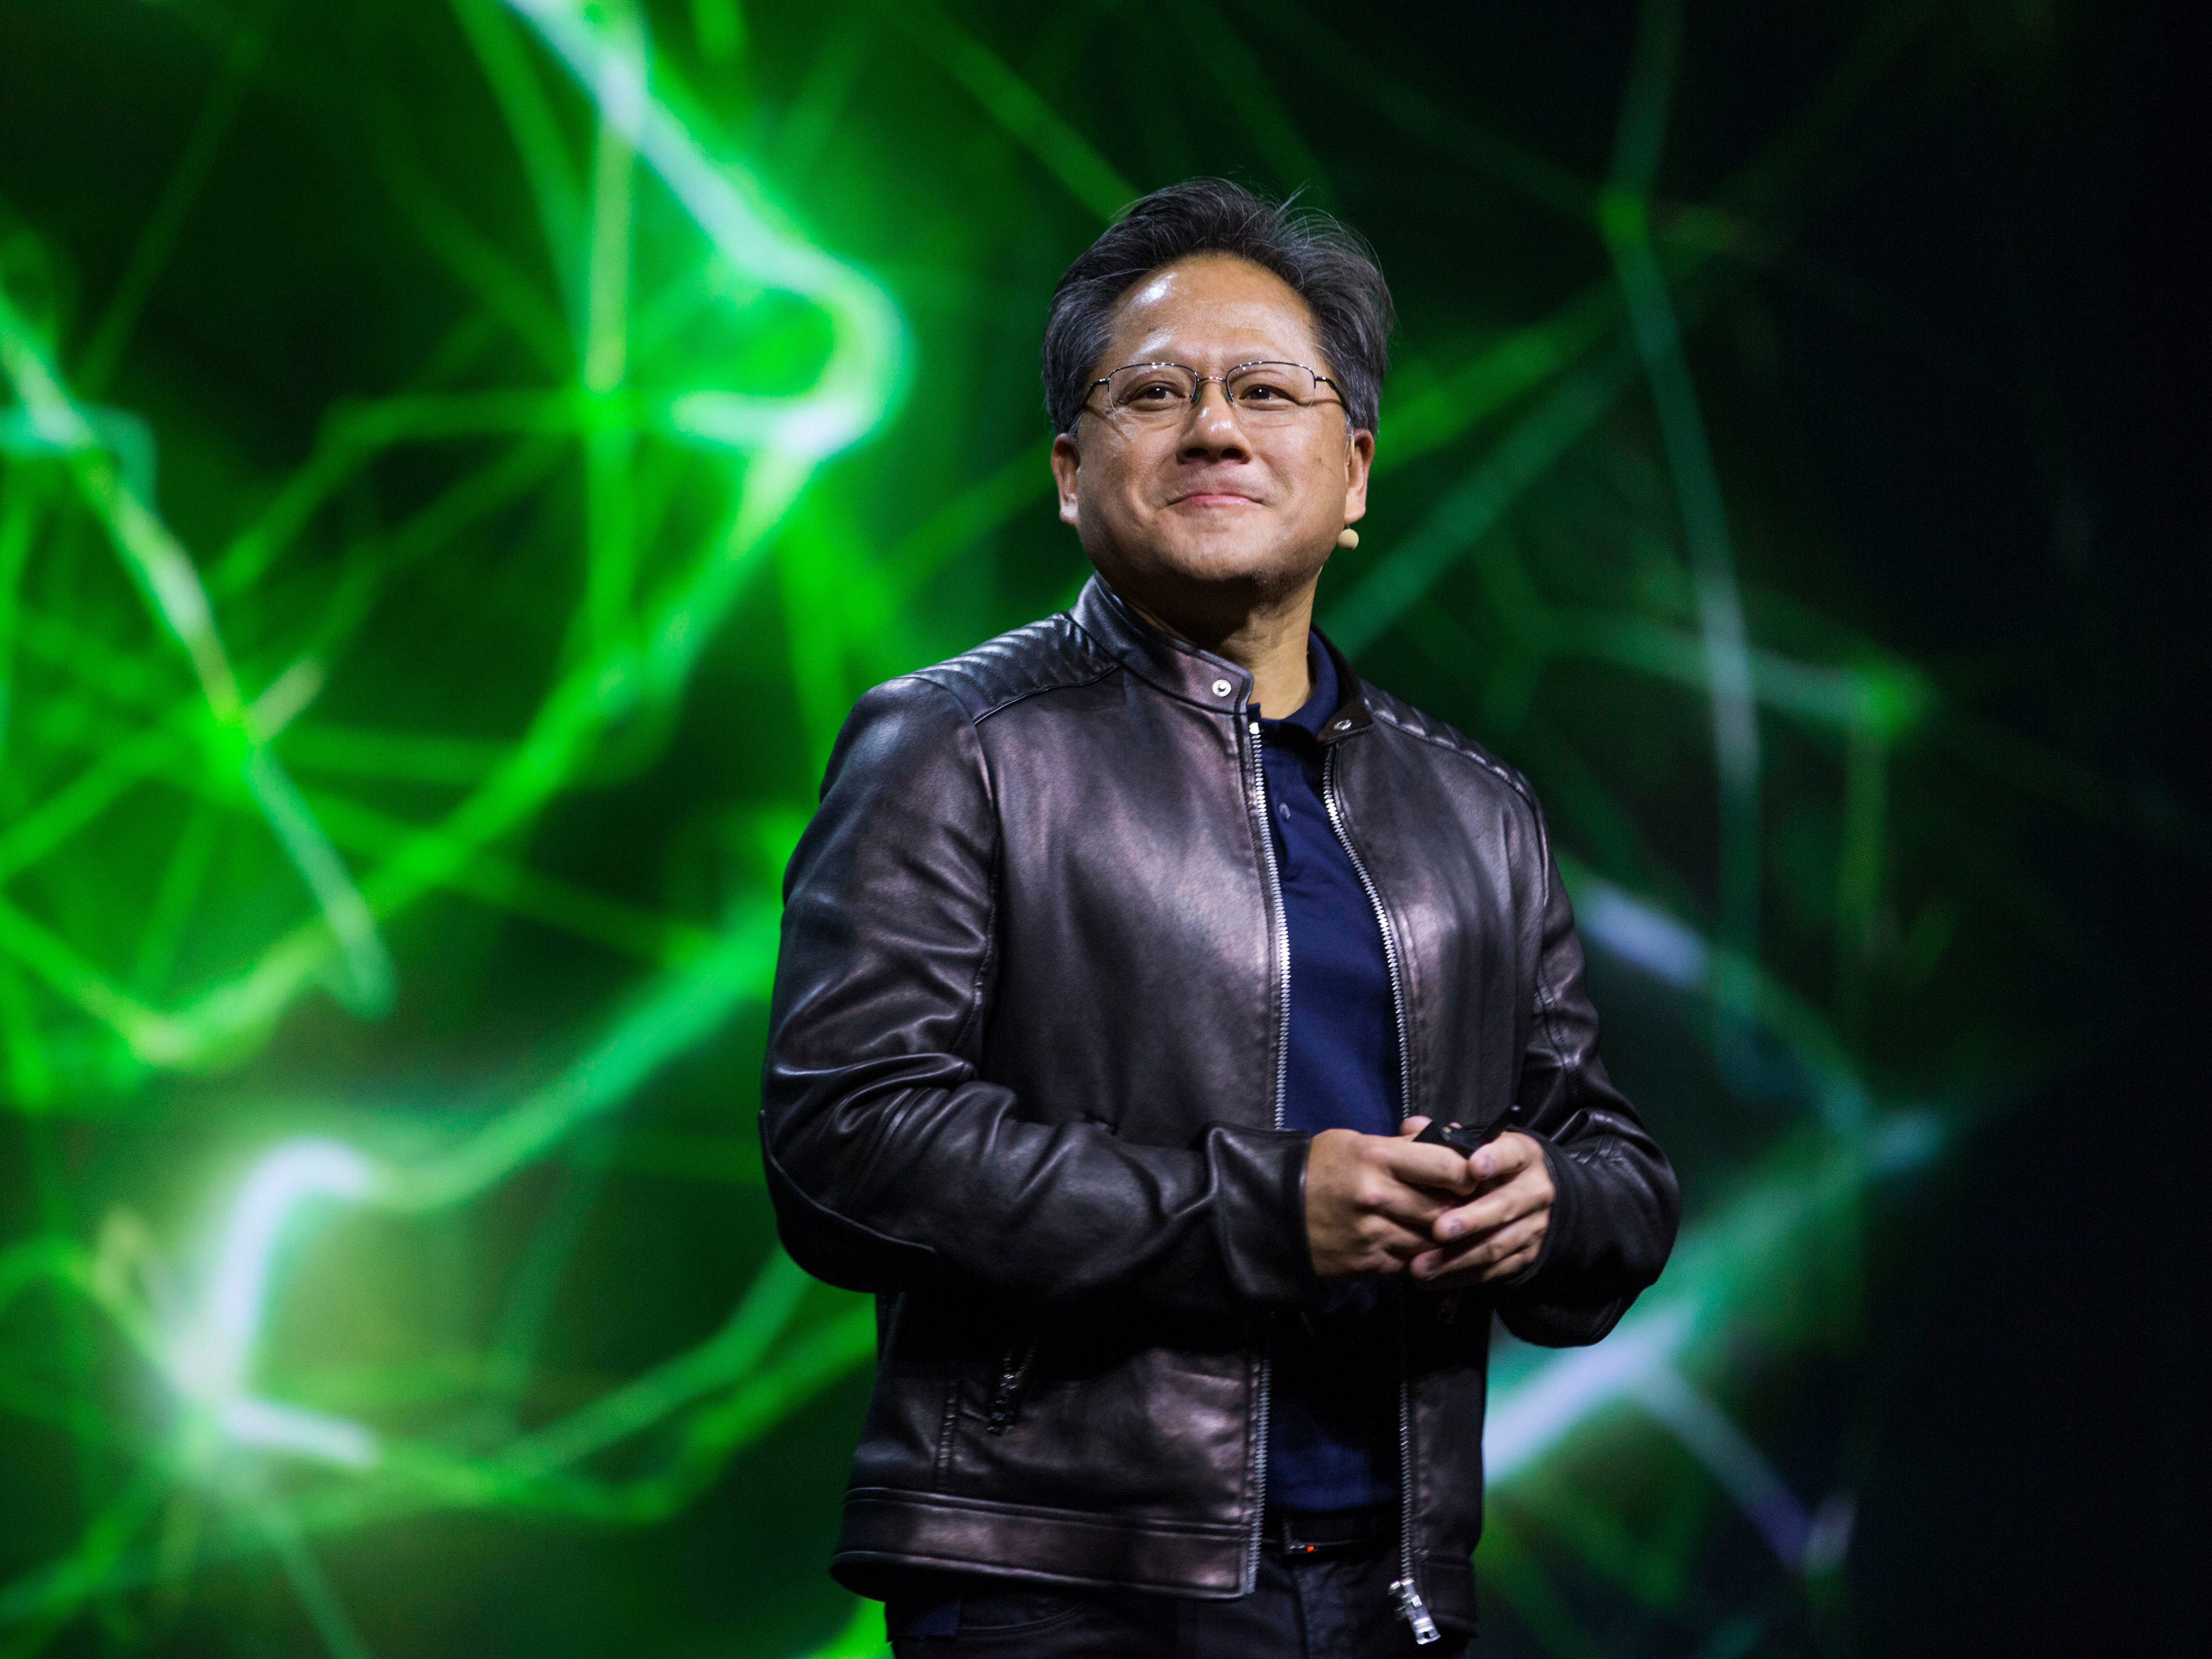 Jen-Hsun Huang, CEO von Nvidia Corp., hält eine Keynote-Präsentation während der GPU Technology Conference in San Jose, Kalifornien.  Später stellte Huang während der Präsentation die Titan-X-CPU vor, die mit einer GeForce-GTX-Titan-X-Grafikkarte betrieben wird.